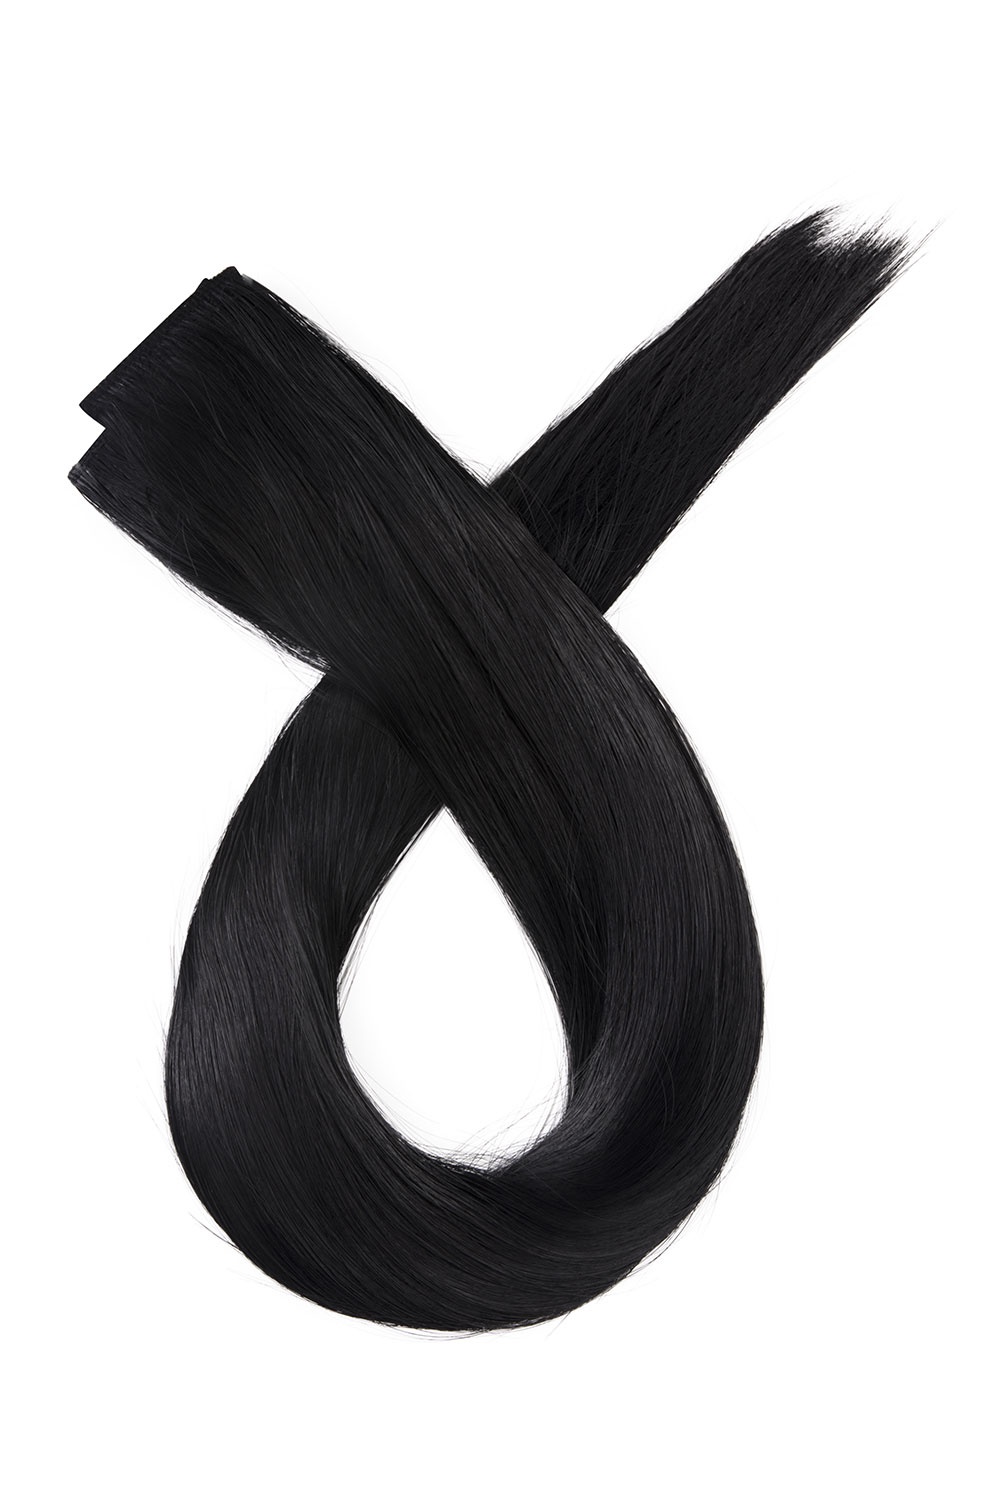 Čierne jednopásové vlasy, rovné, 50cm, 115g, farba 1